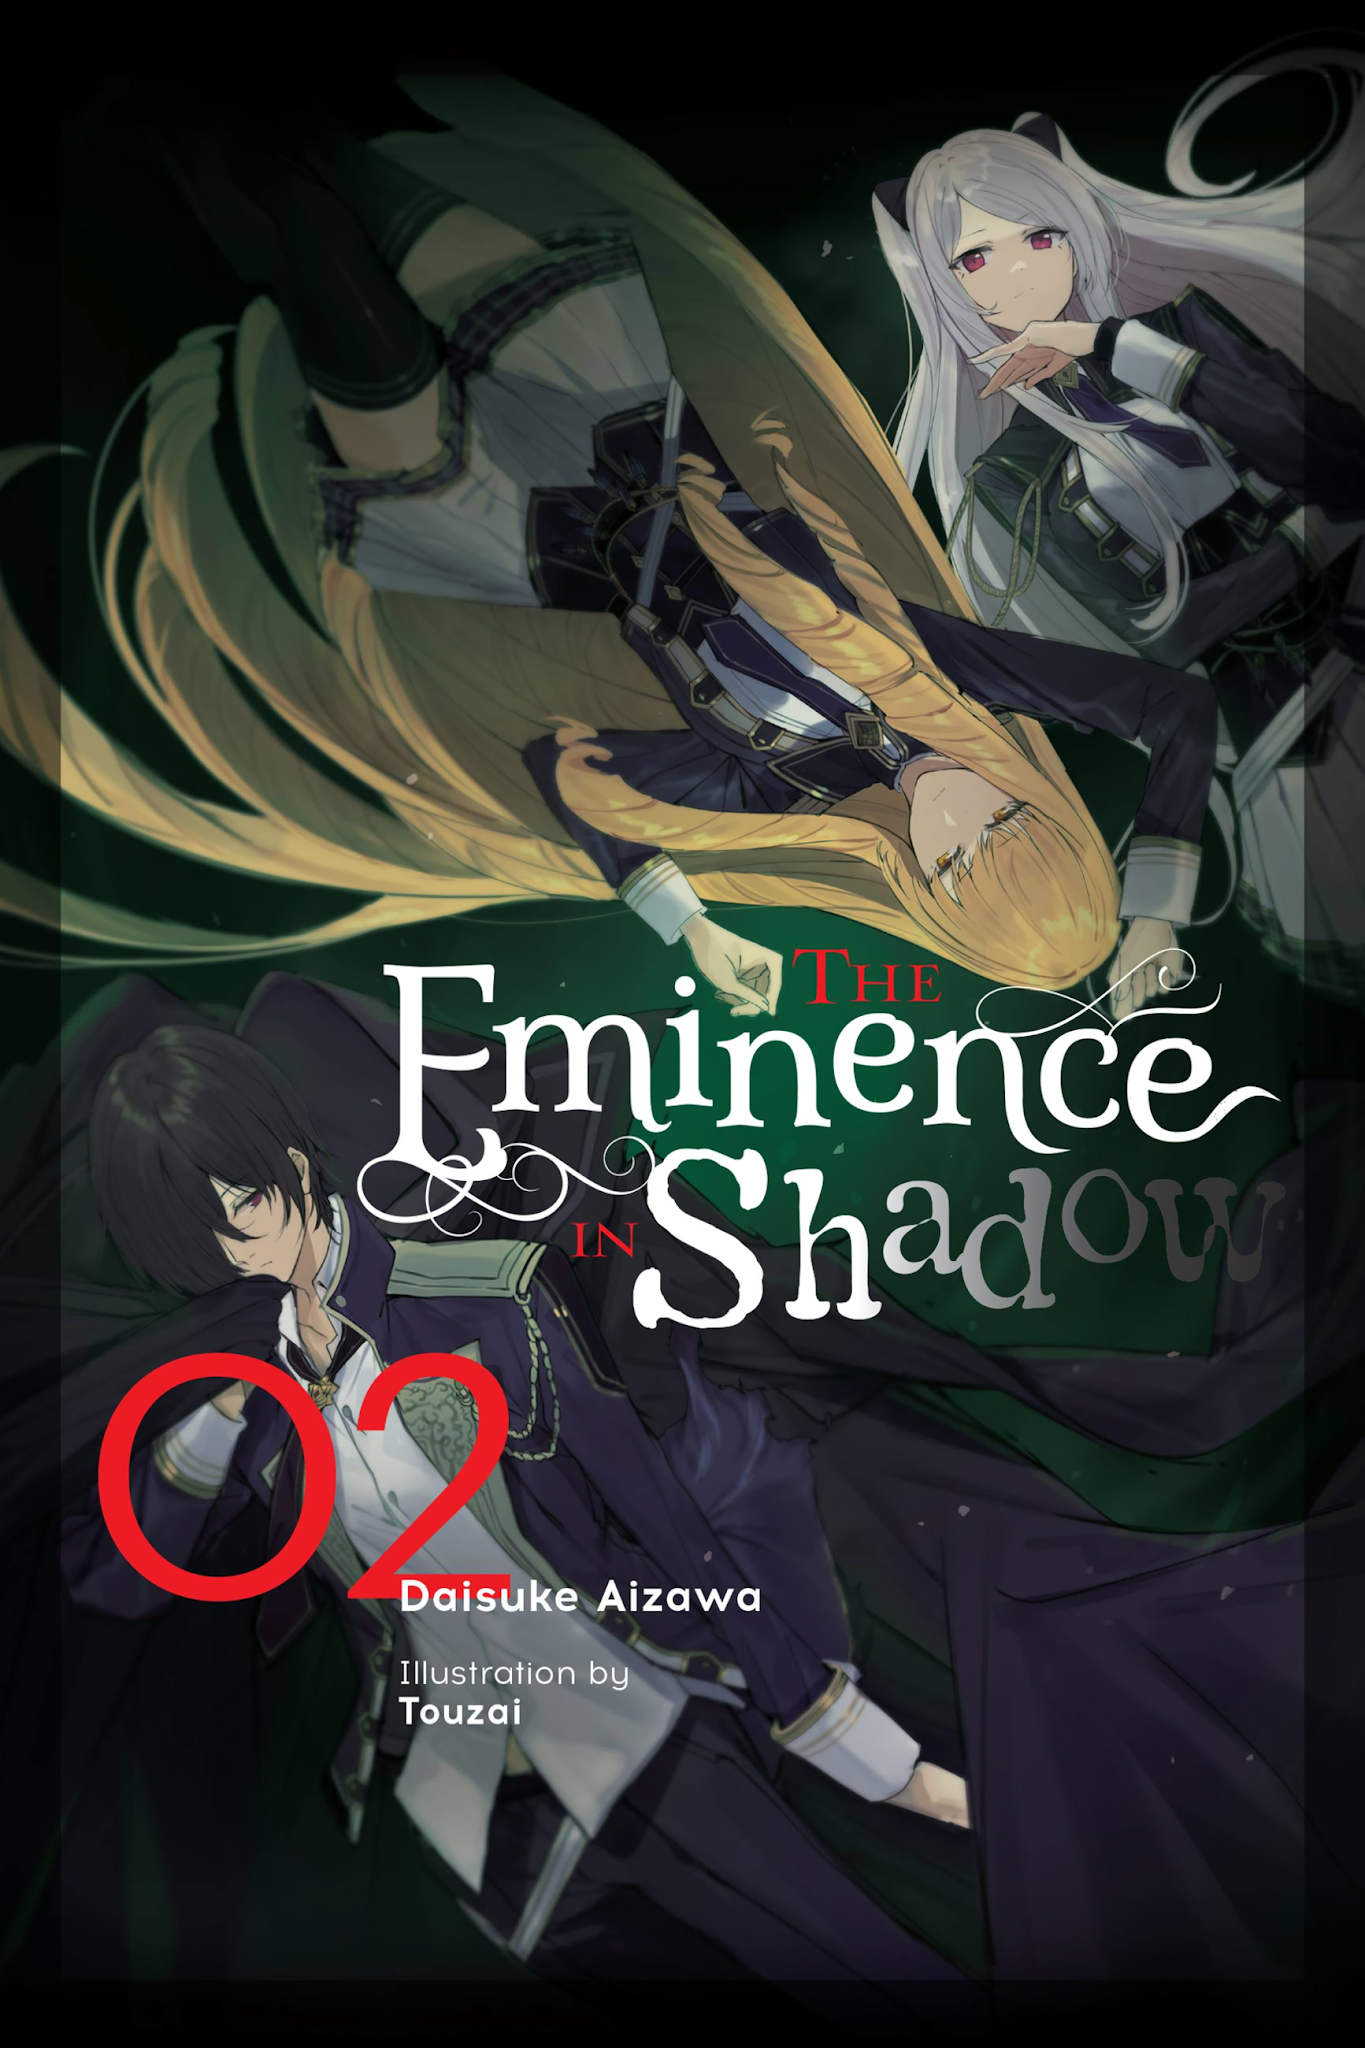 The Eminence in Shadow (Light Novel) - Volume 2